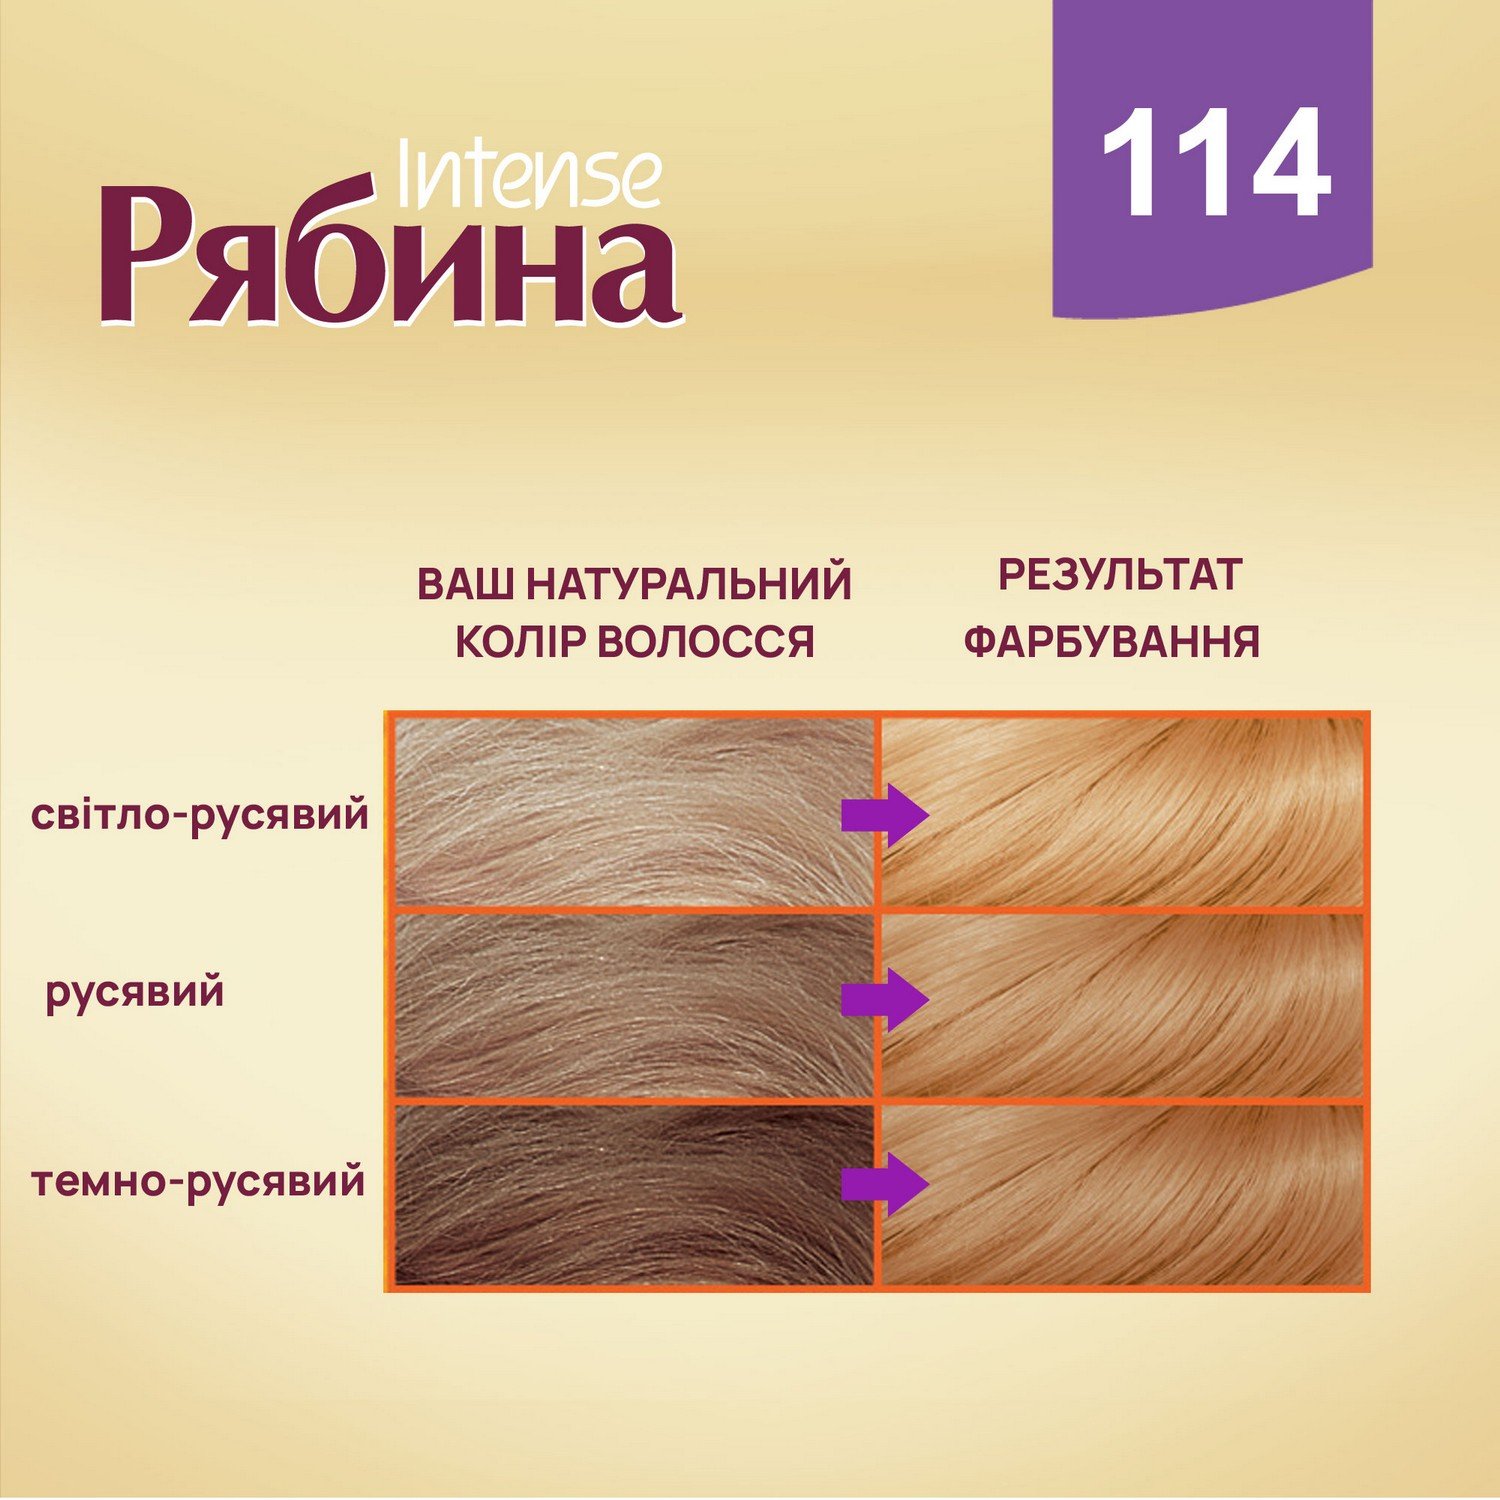 Крем-фарба для волосся Рябина Intense, відтінок 114 (Карамель), 138 мл - фото 6